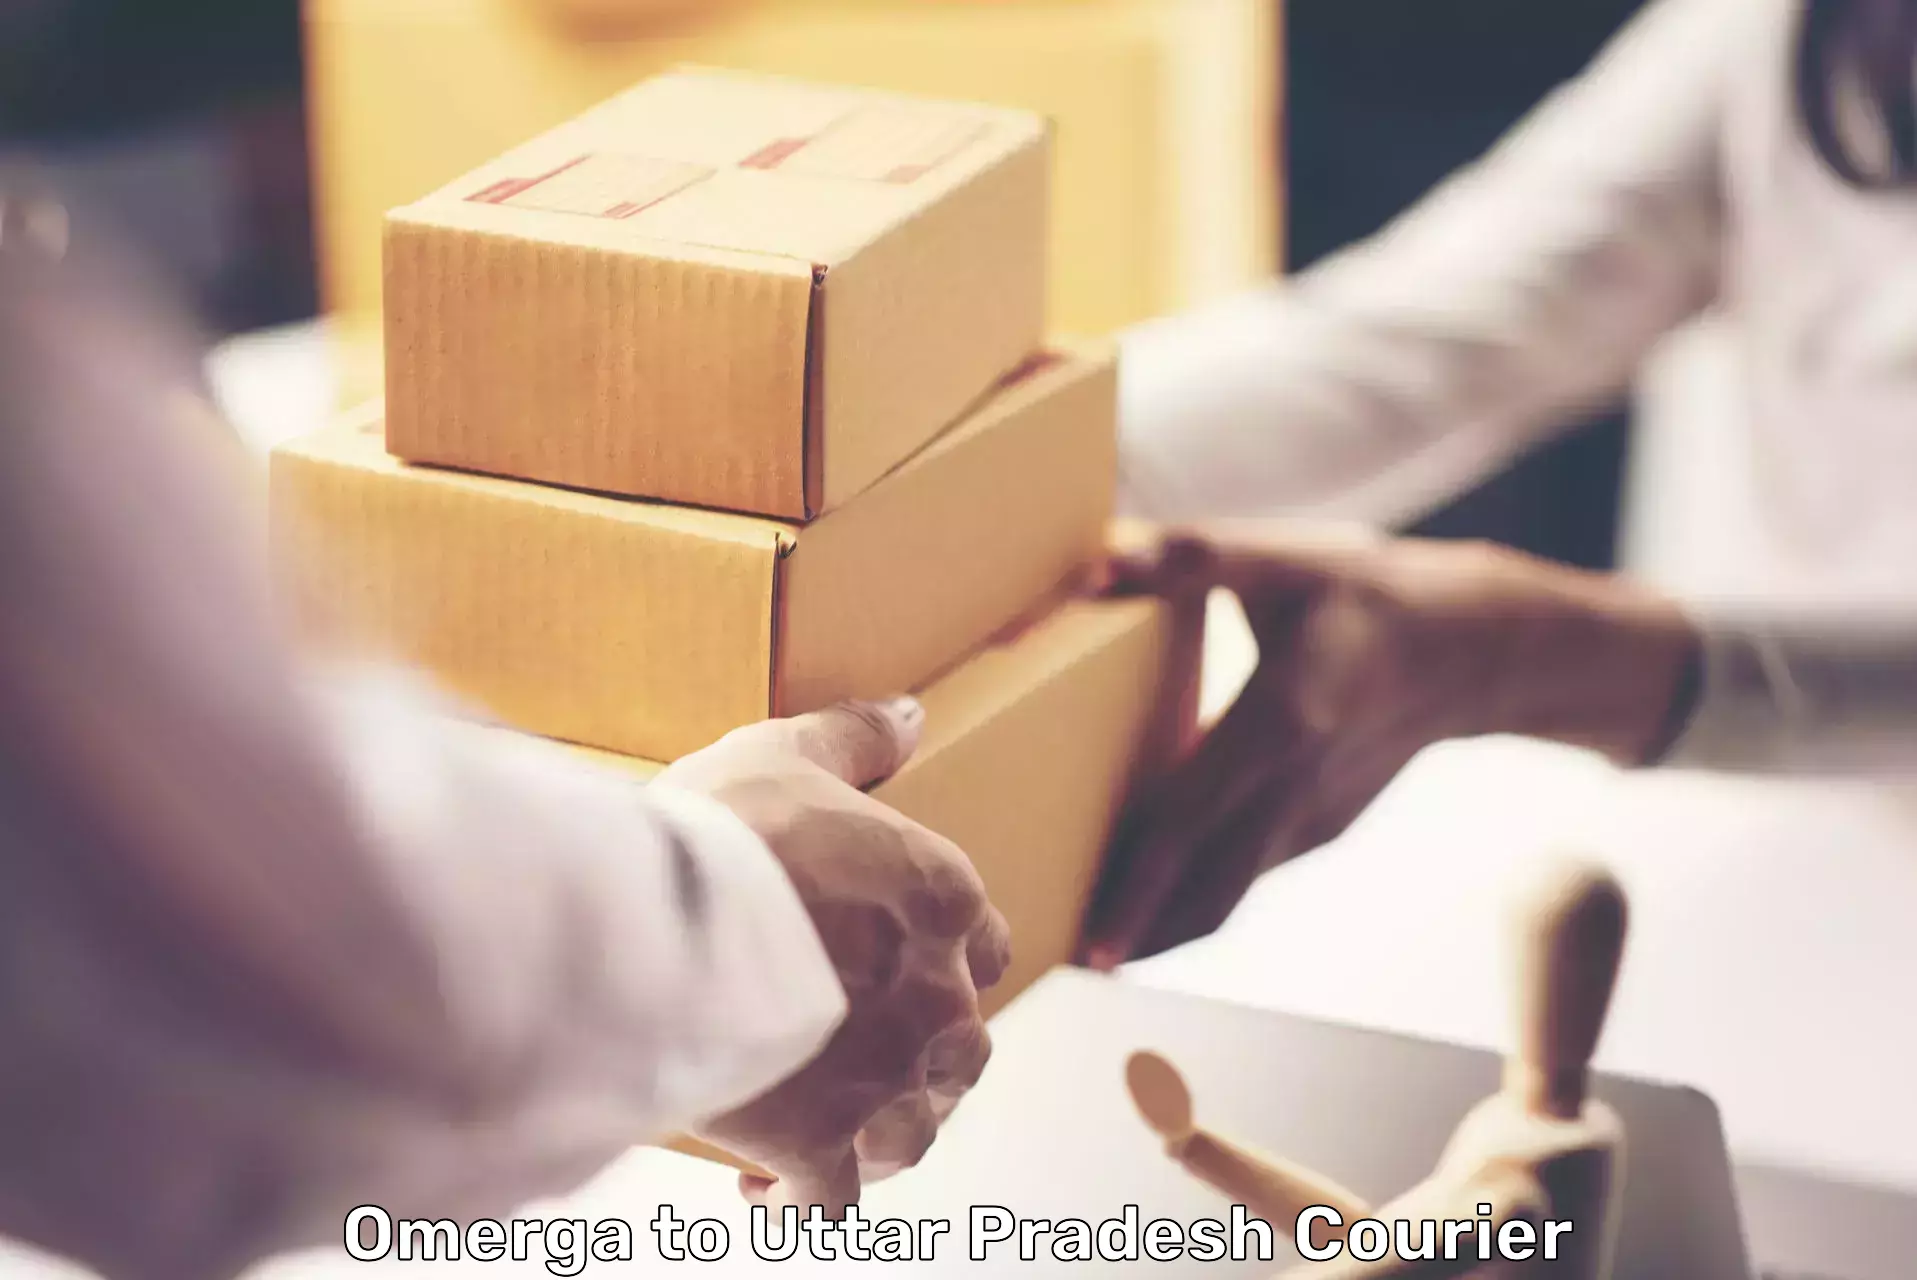 Next-day delivery options Omerga to Uttar Pradesh